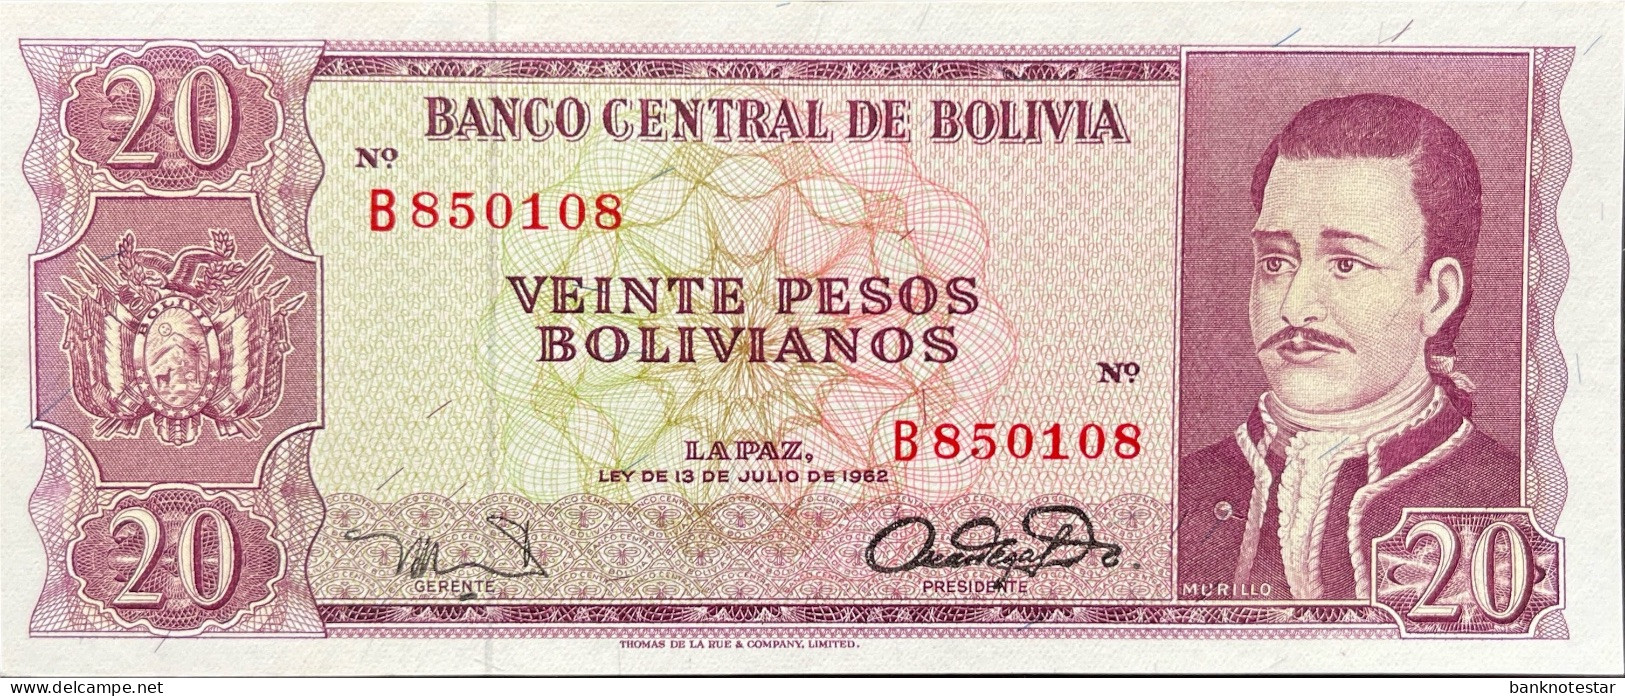 Bolivia 20 Pesos Bolivianos, P-161 (L.1962) - UNC - RARE - Bolivie